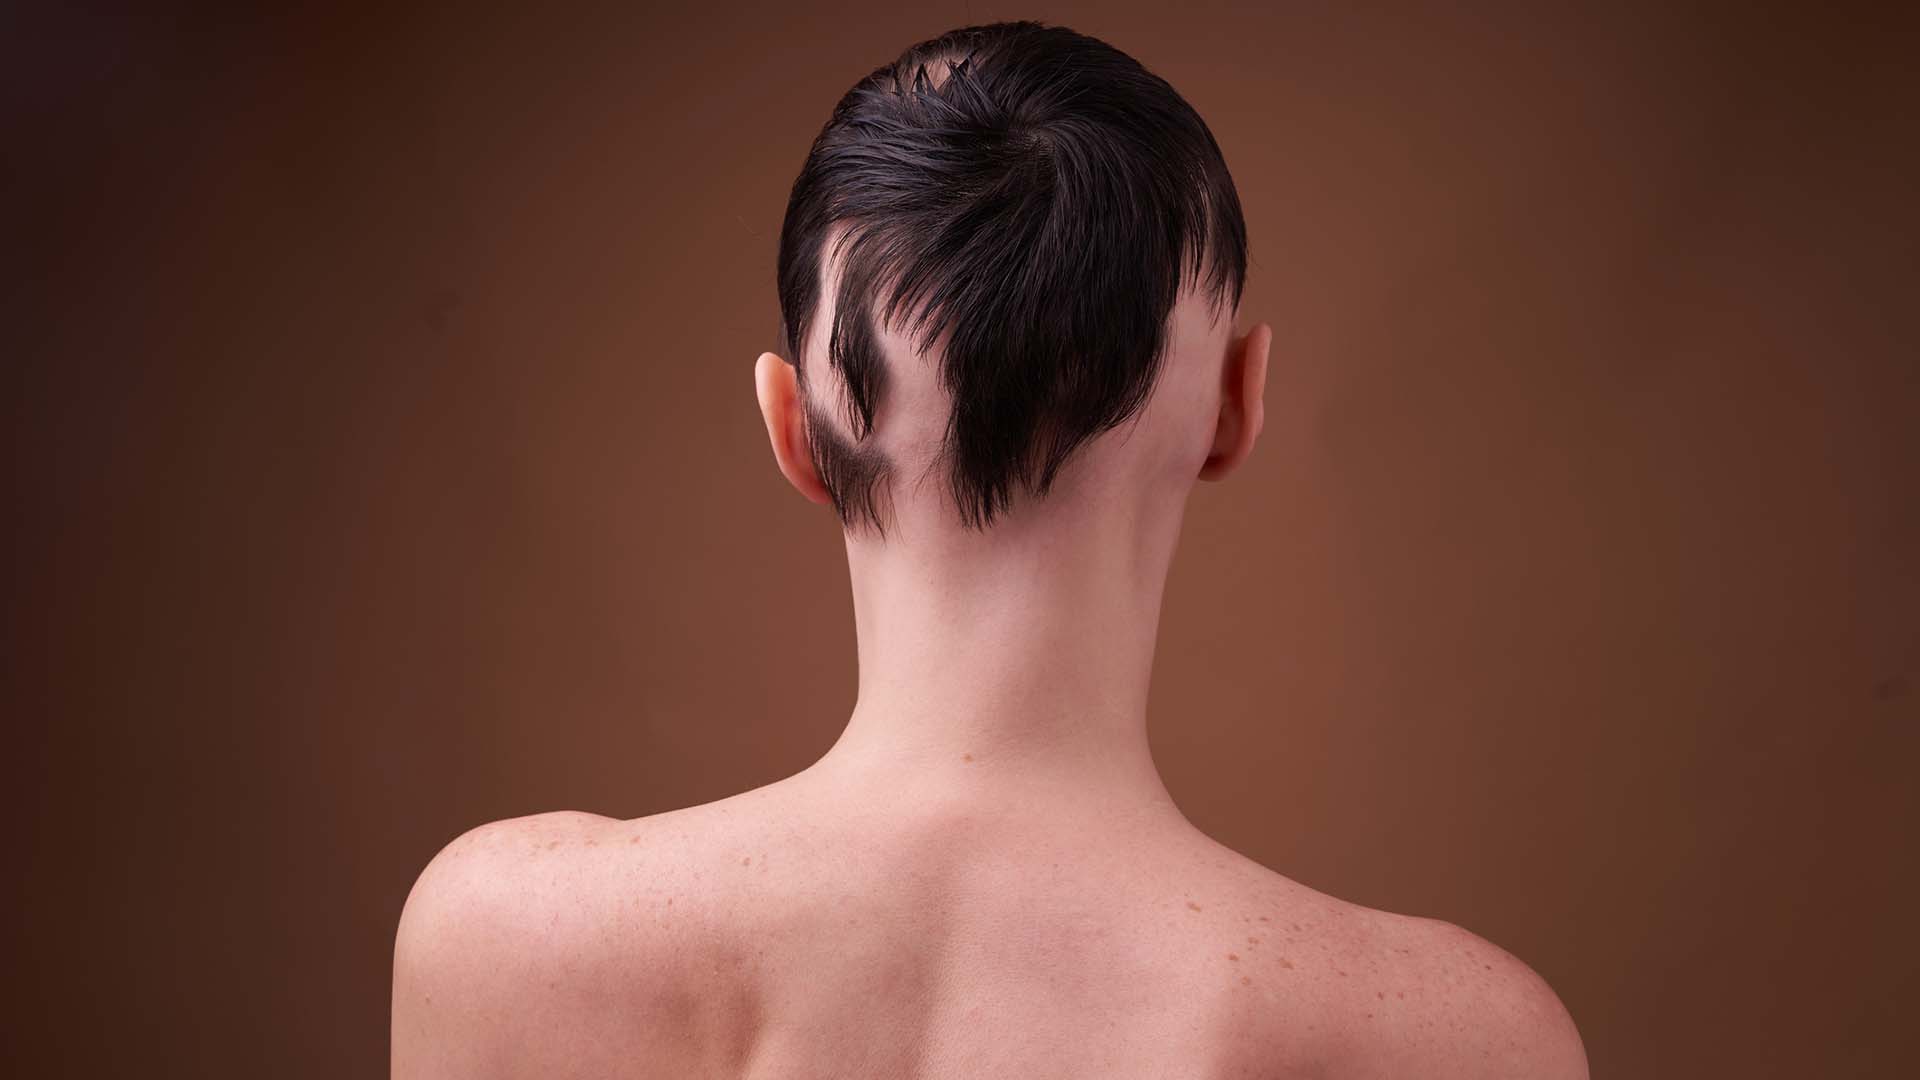 La alopecia se ve cada vez más en personas de menor edad (Getty)